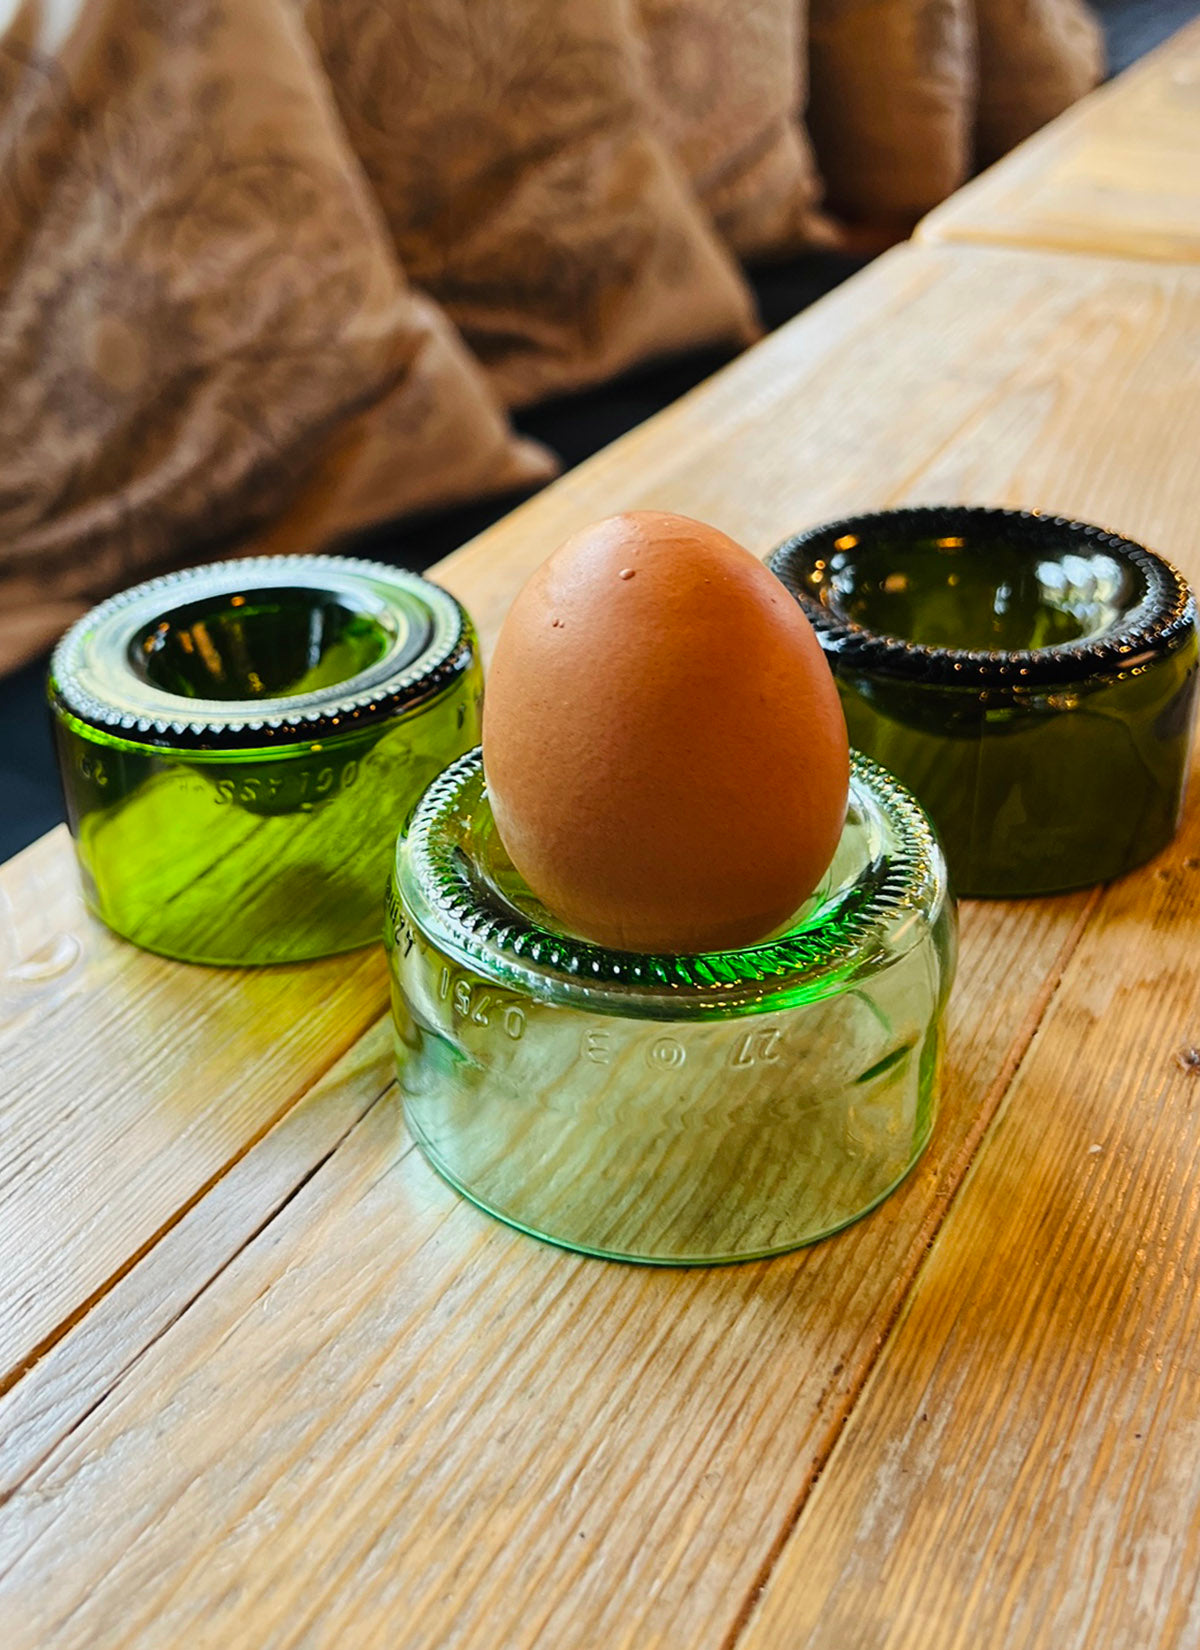 Æggebæger fra vinflasker - Upcycling